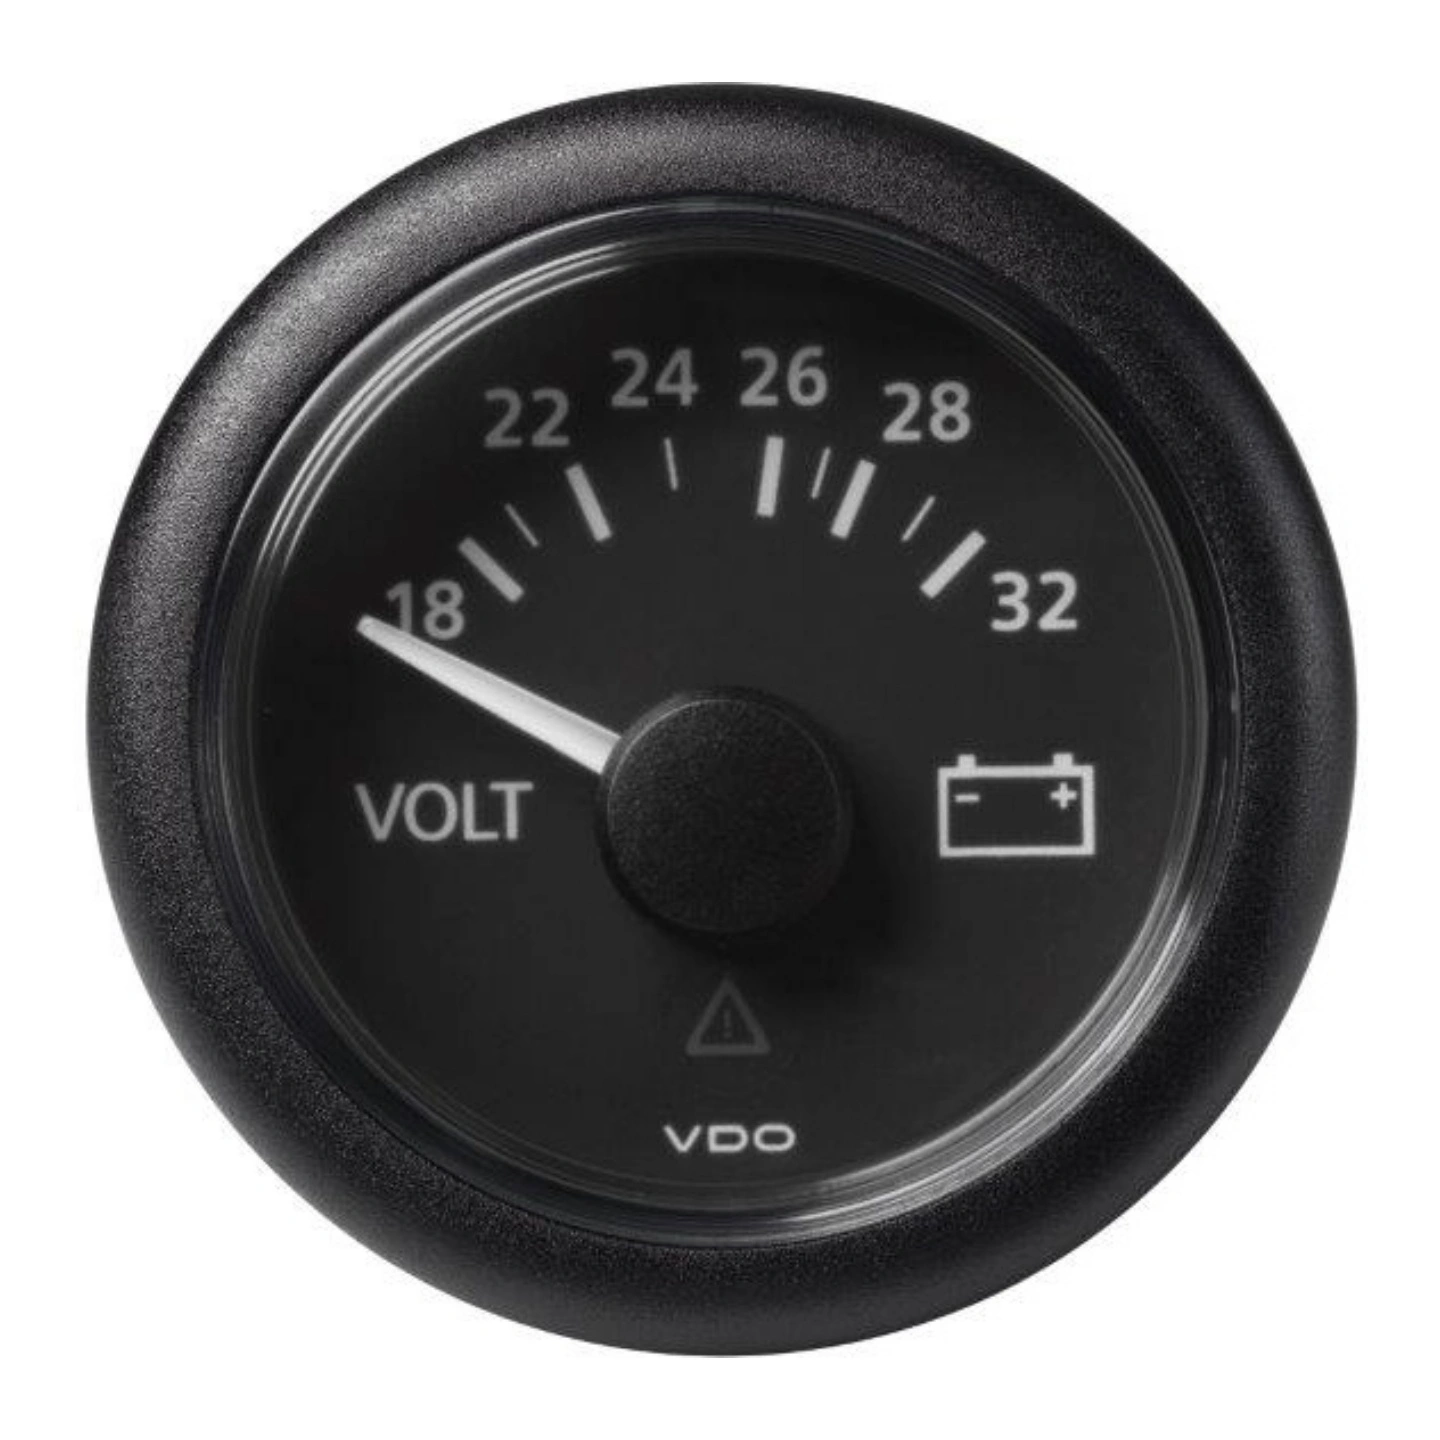 VDO Voltmeter 18-32V (24V) ViewLine - Ø52mm - sort